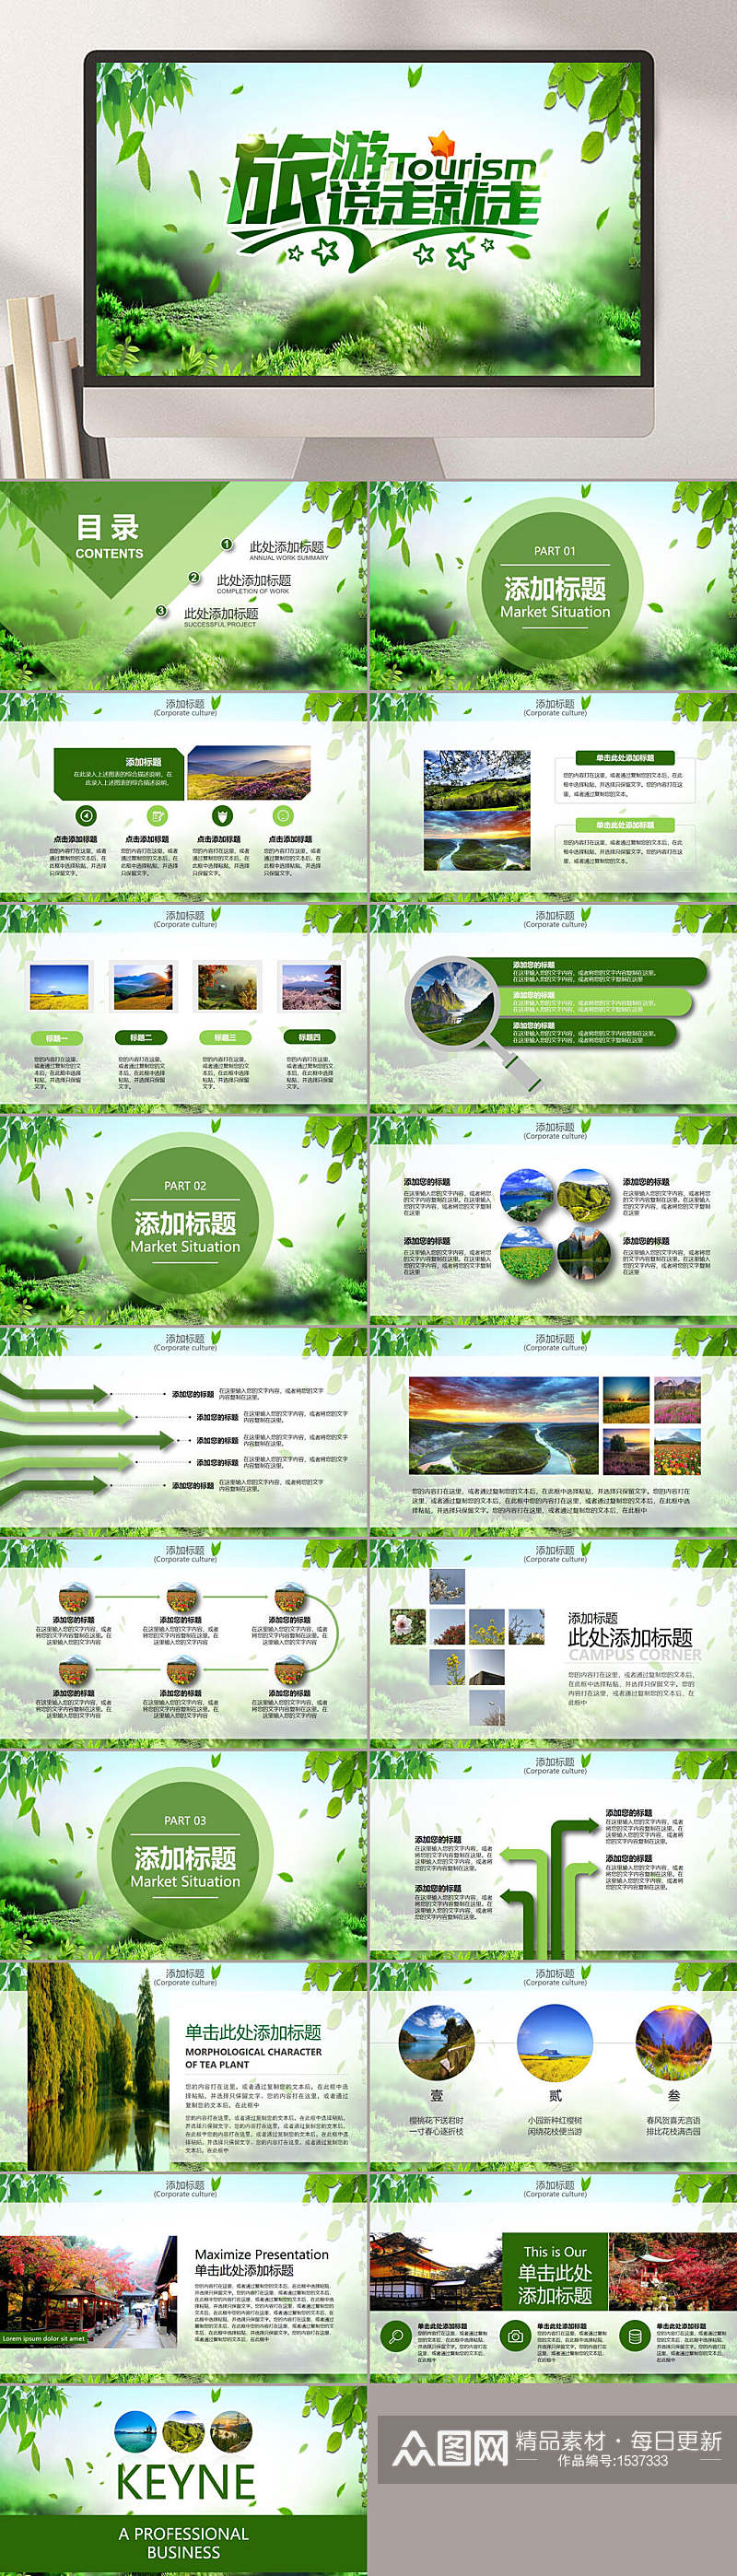 绿色旅游旅行照片PPT模板素材